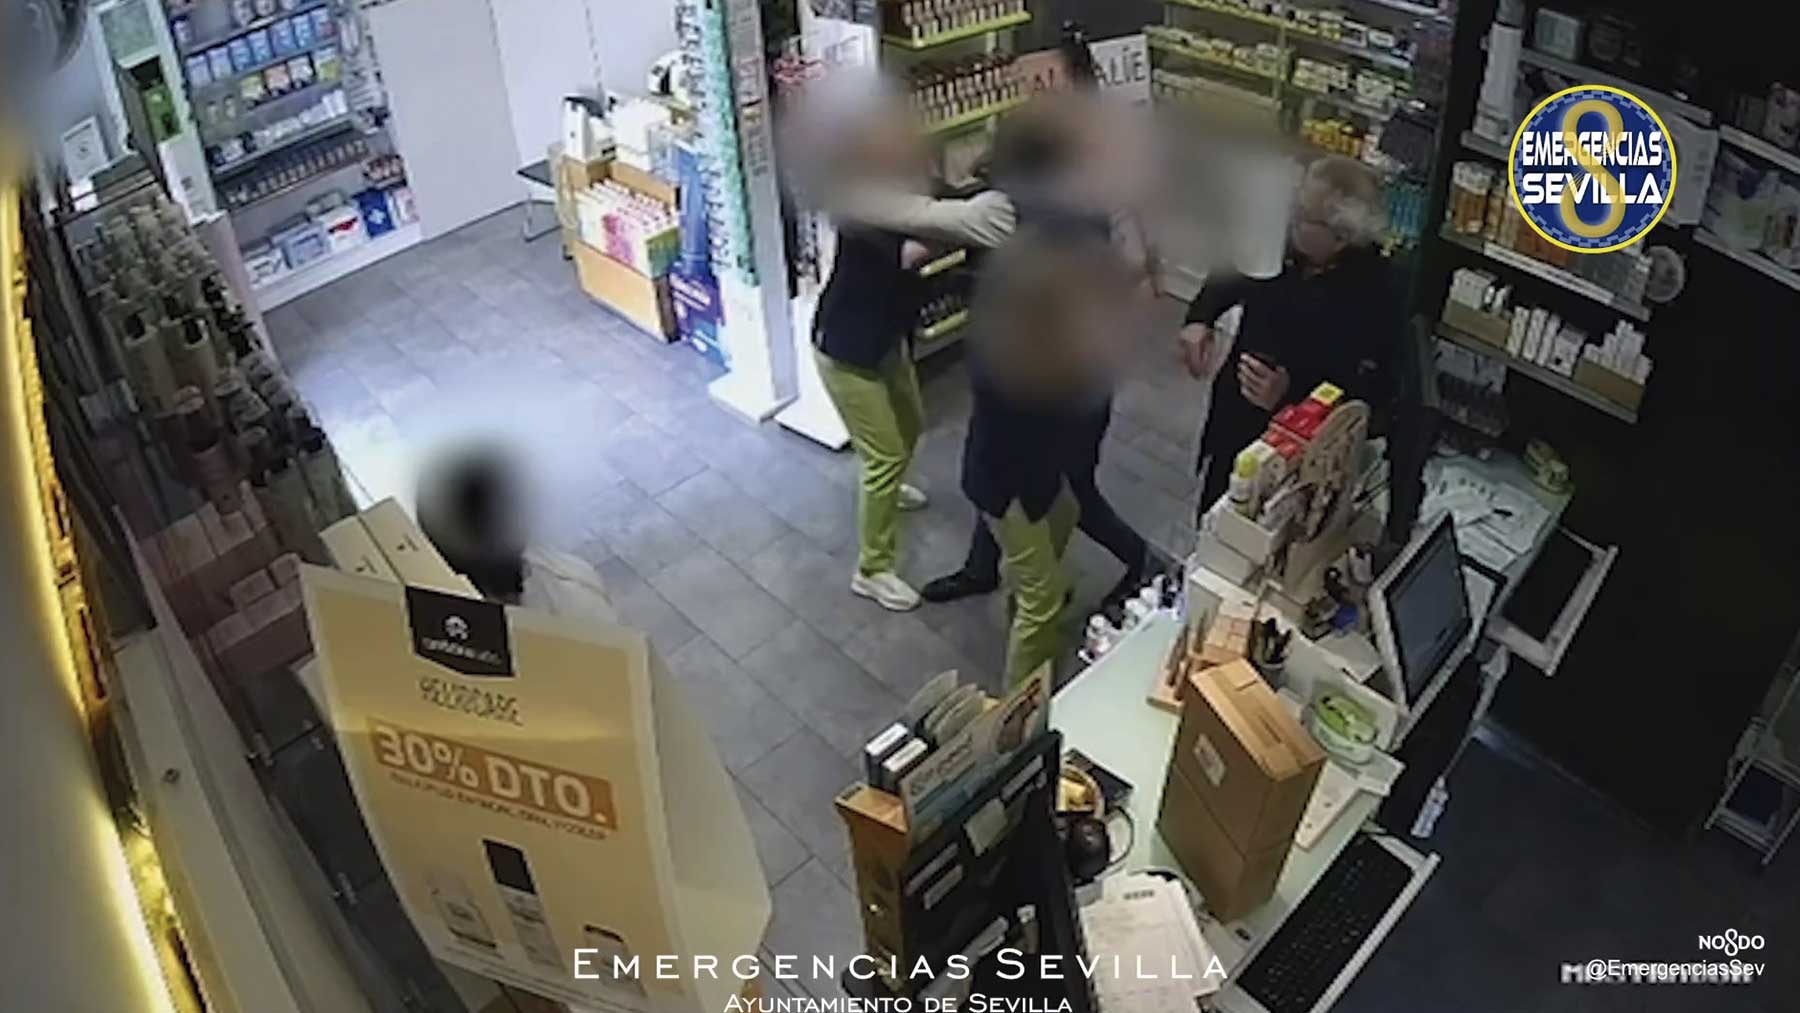 Así ha atracado un inmigrante una farmacia en Sevilla y ha agredido a la empleada que intentó evitarlo.